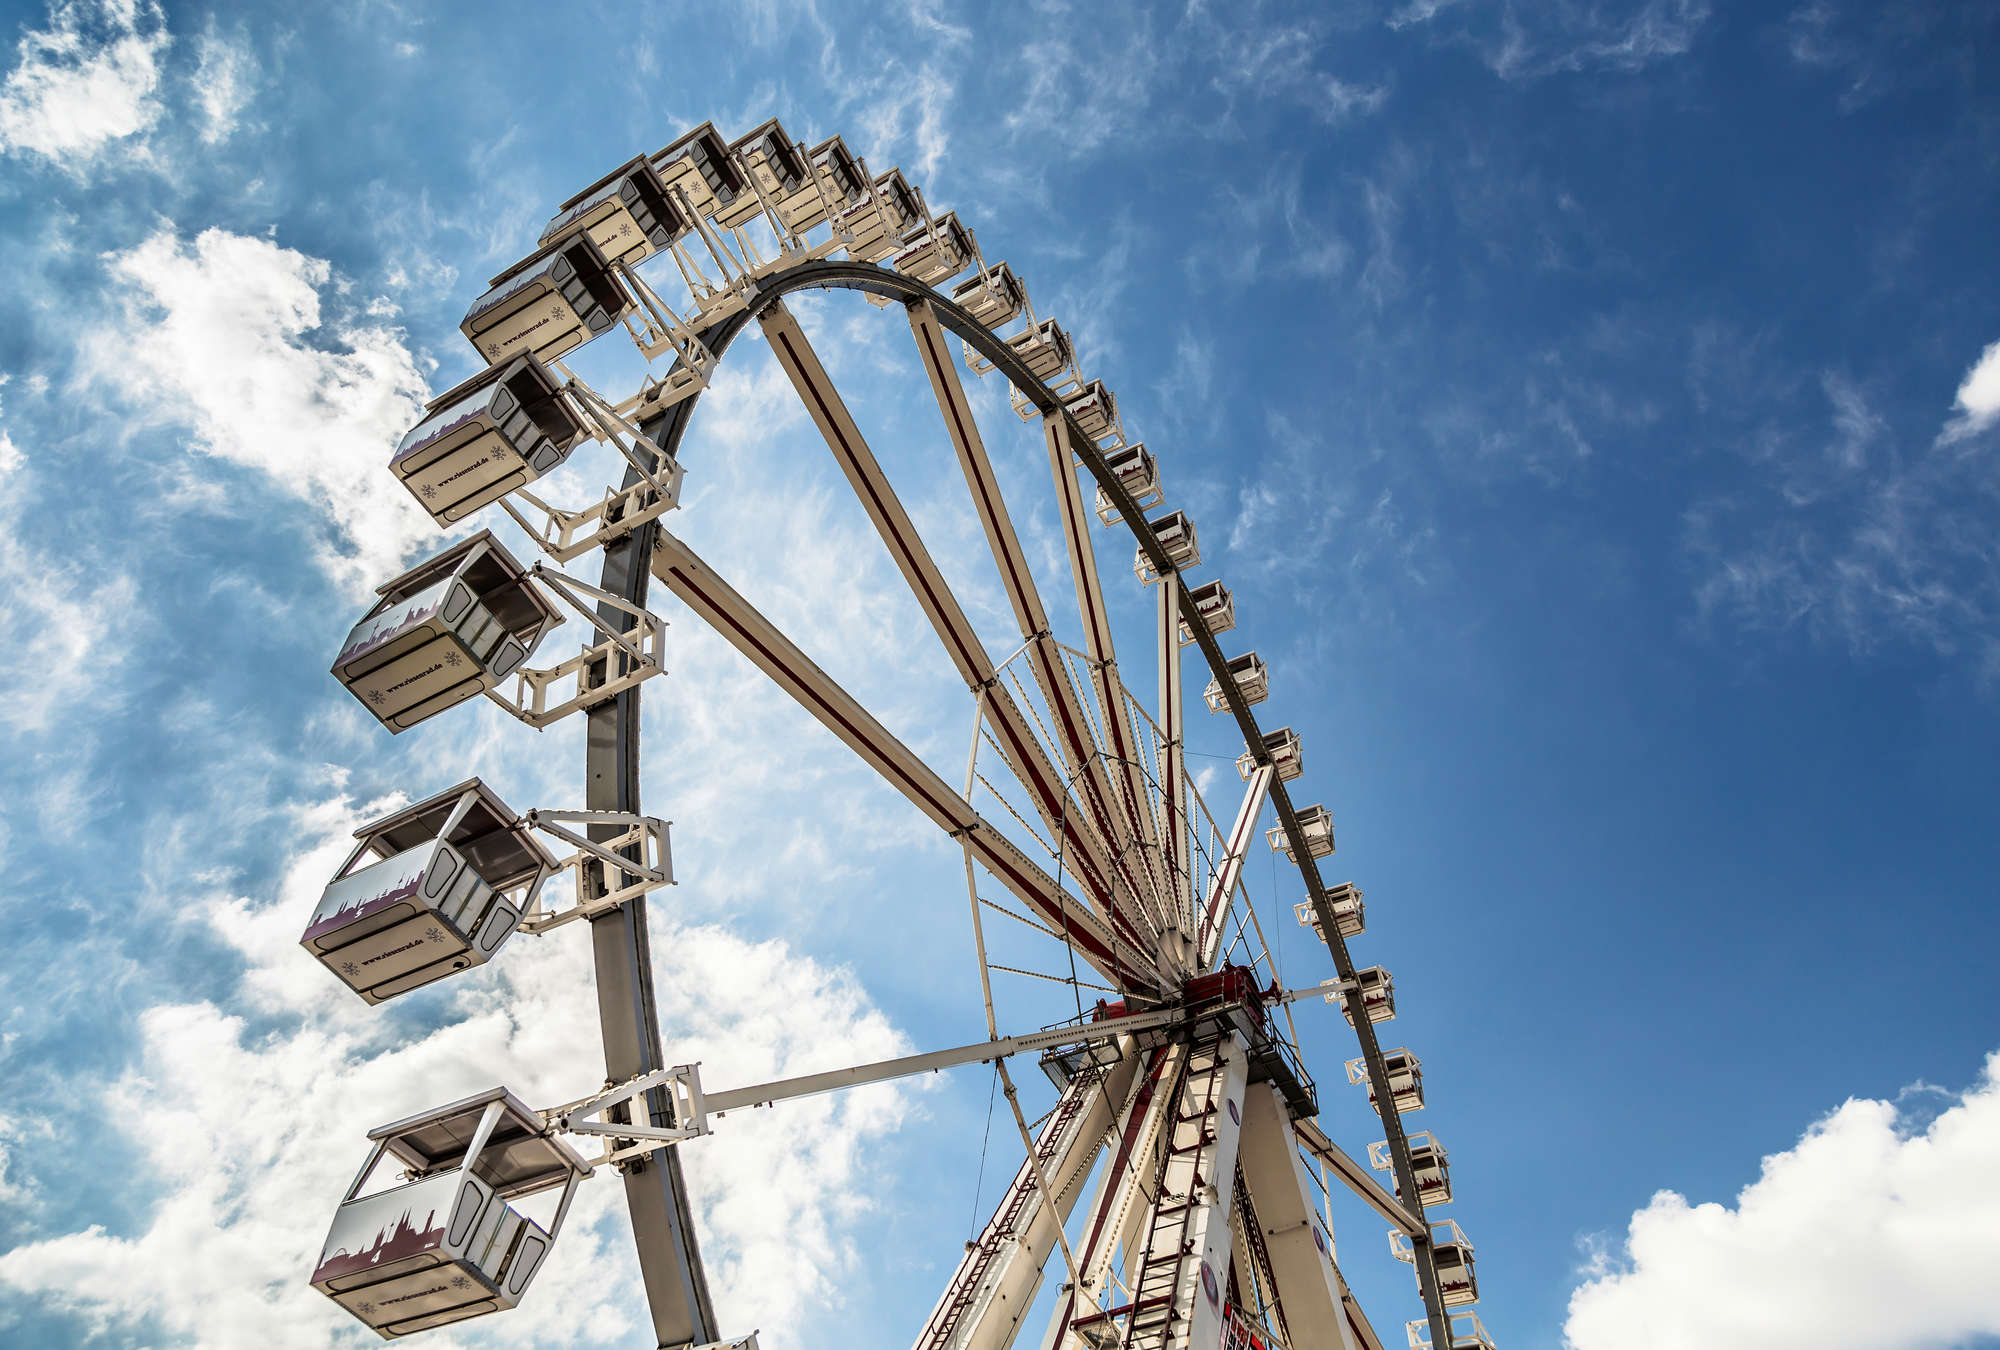             Fototapete Riesenrad – Blick in den Himmel
        